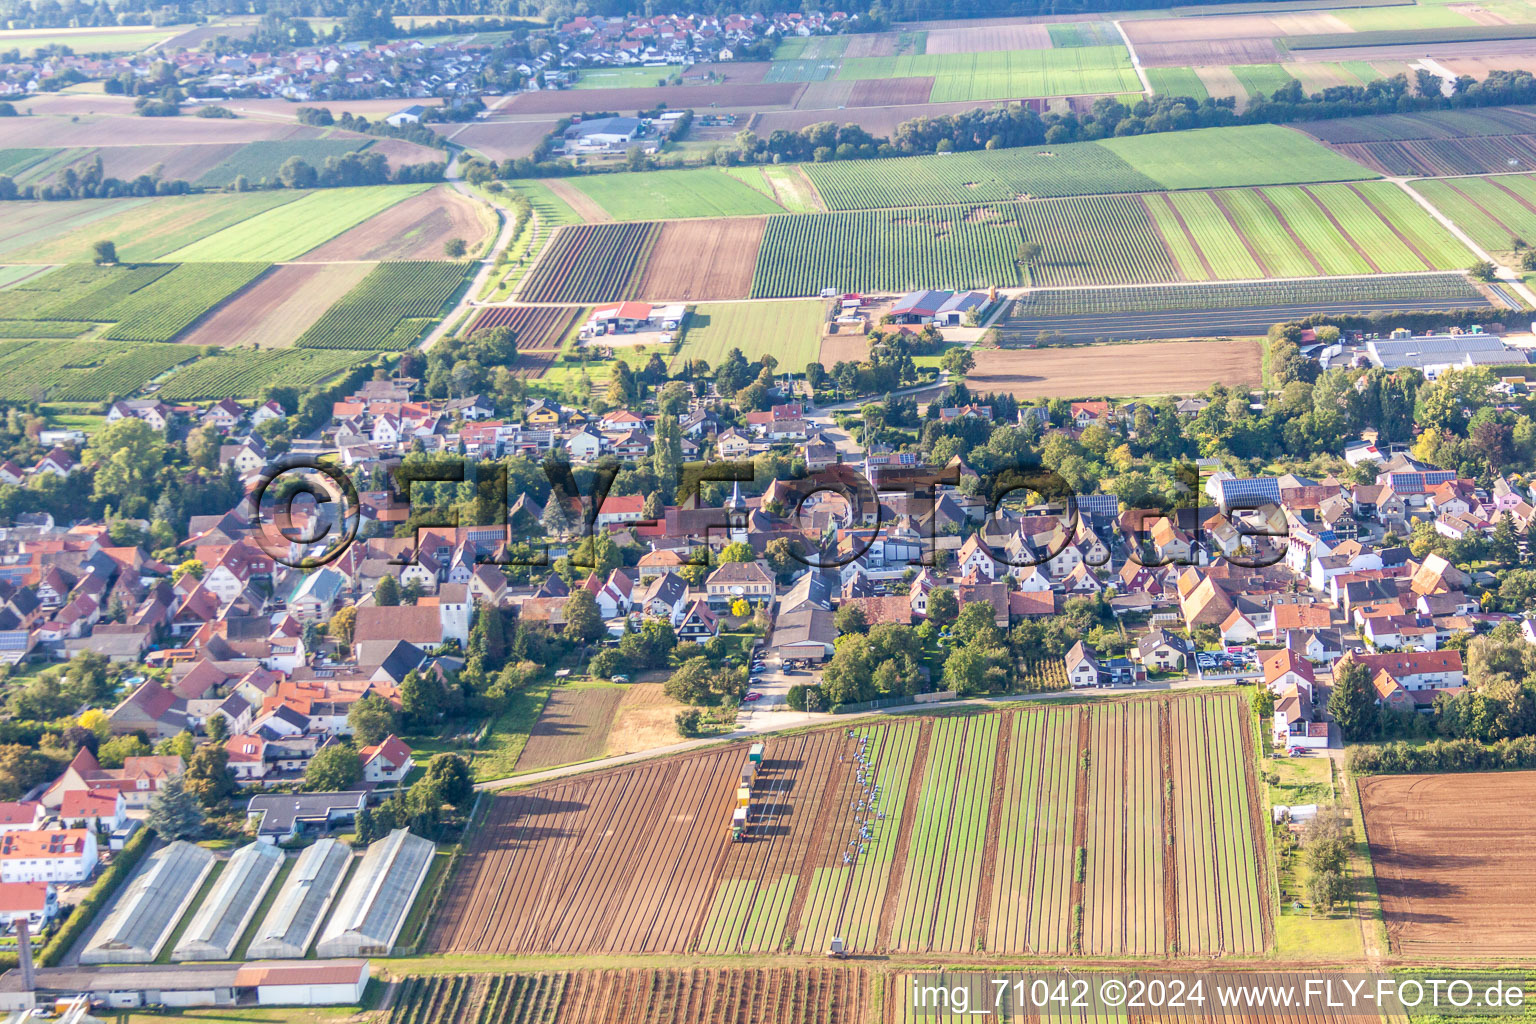 Weingarten dans le département Rhénanie-Palatinat, Allemagne hors des airs